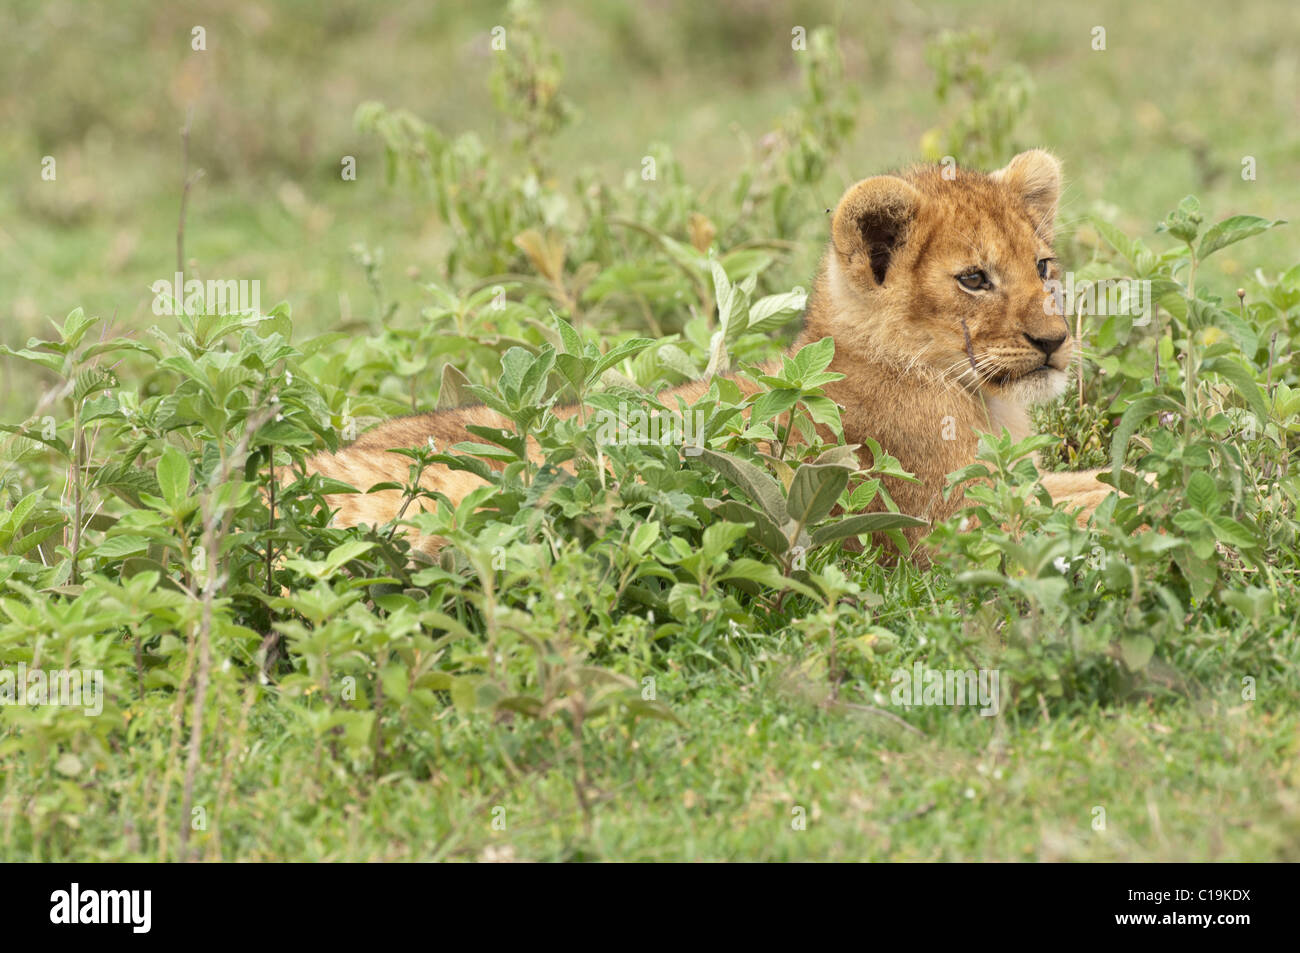 Stock photo d'un lion cub se reposant dans la végétation verte. Banque D'Images